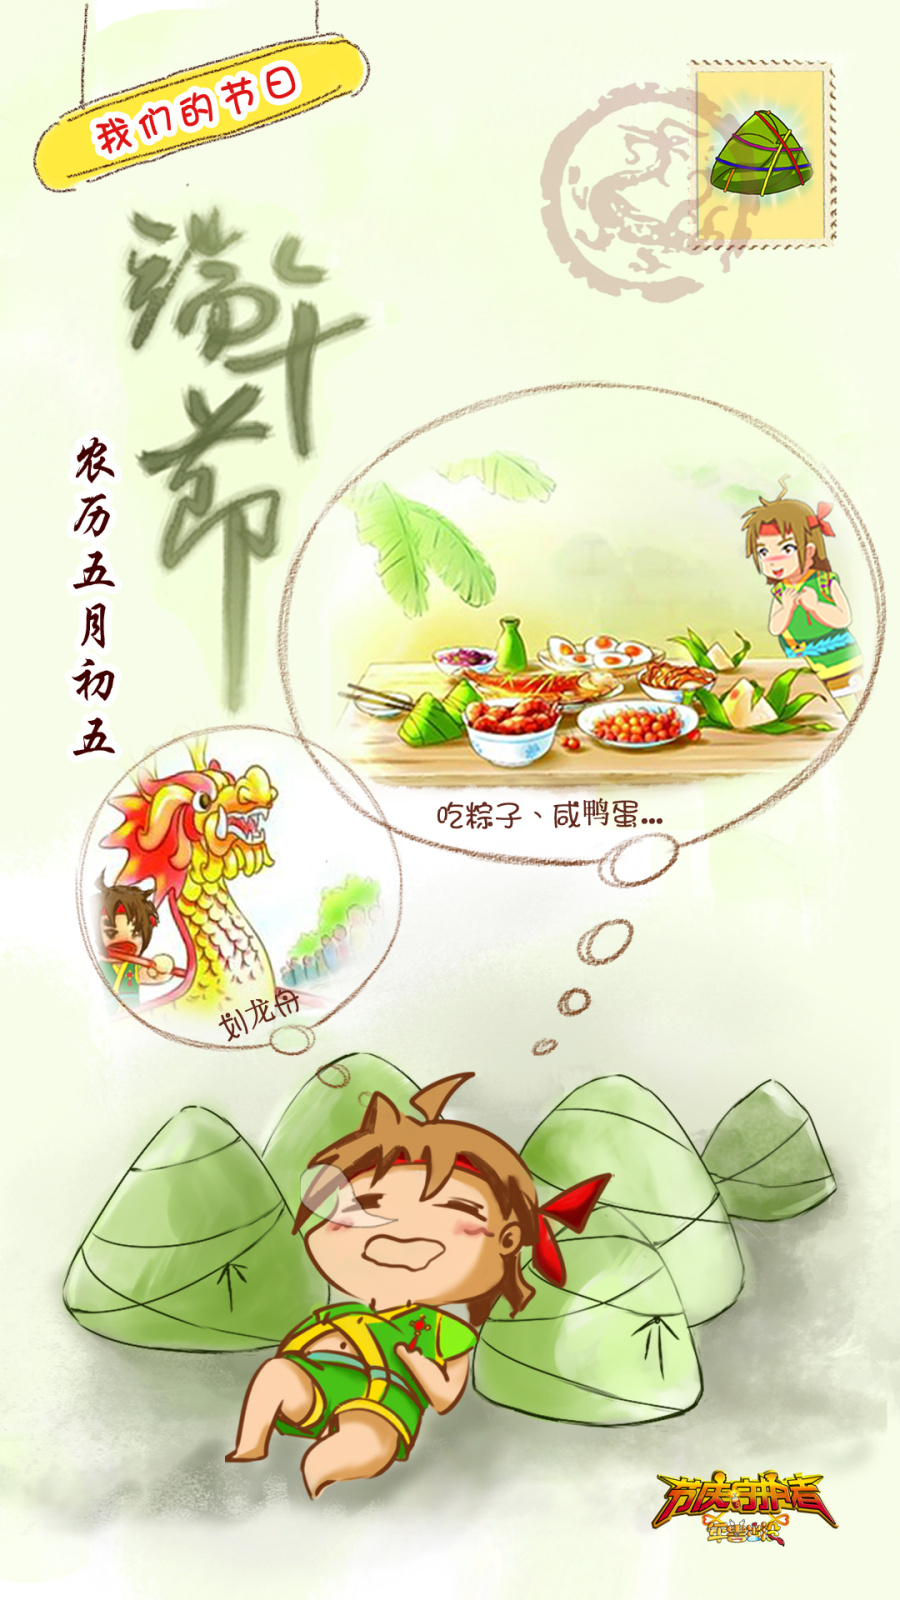 中华传统节庆 中国节日 素材手机壁纸设计 节庆